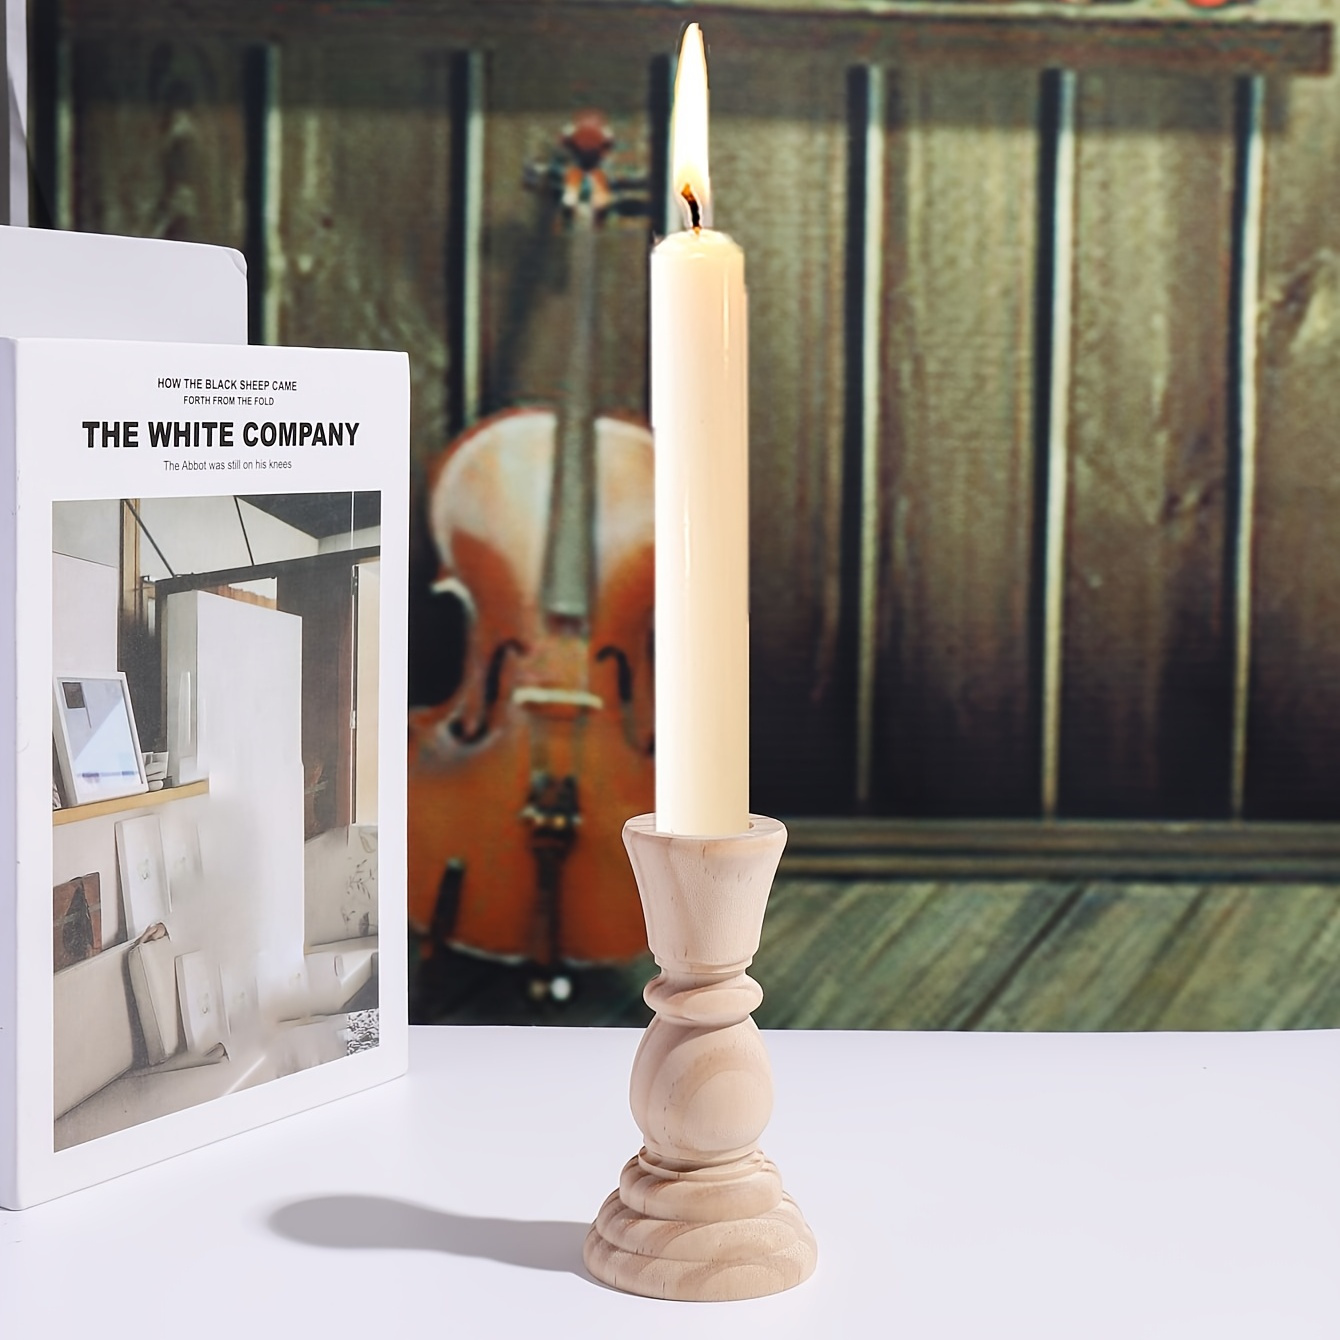 Candelero de madera sin vela personalizado con 2 nombres, 1 año y 1 foto